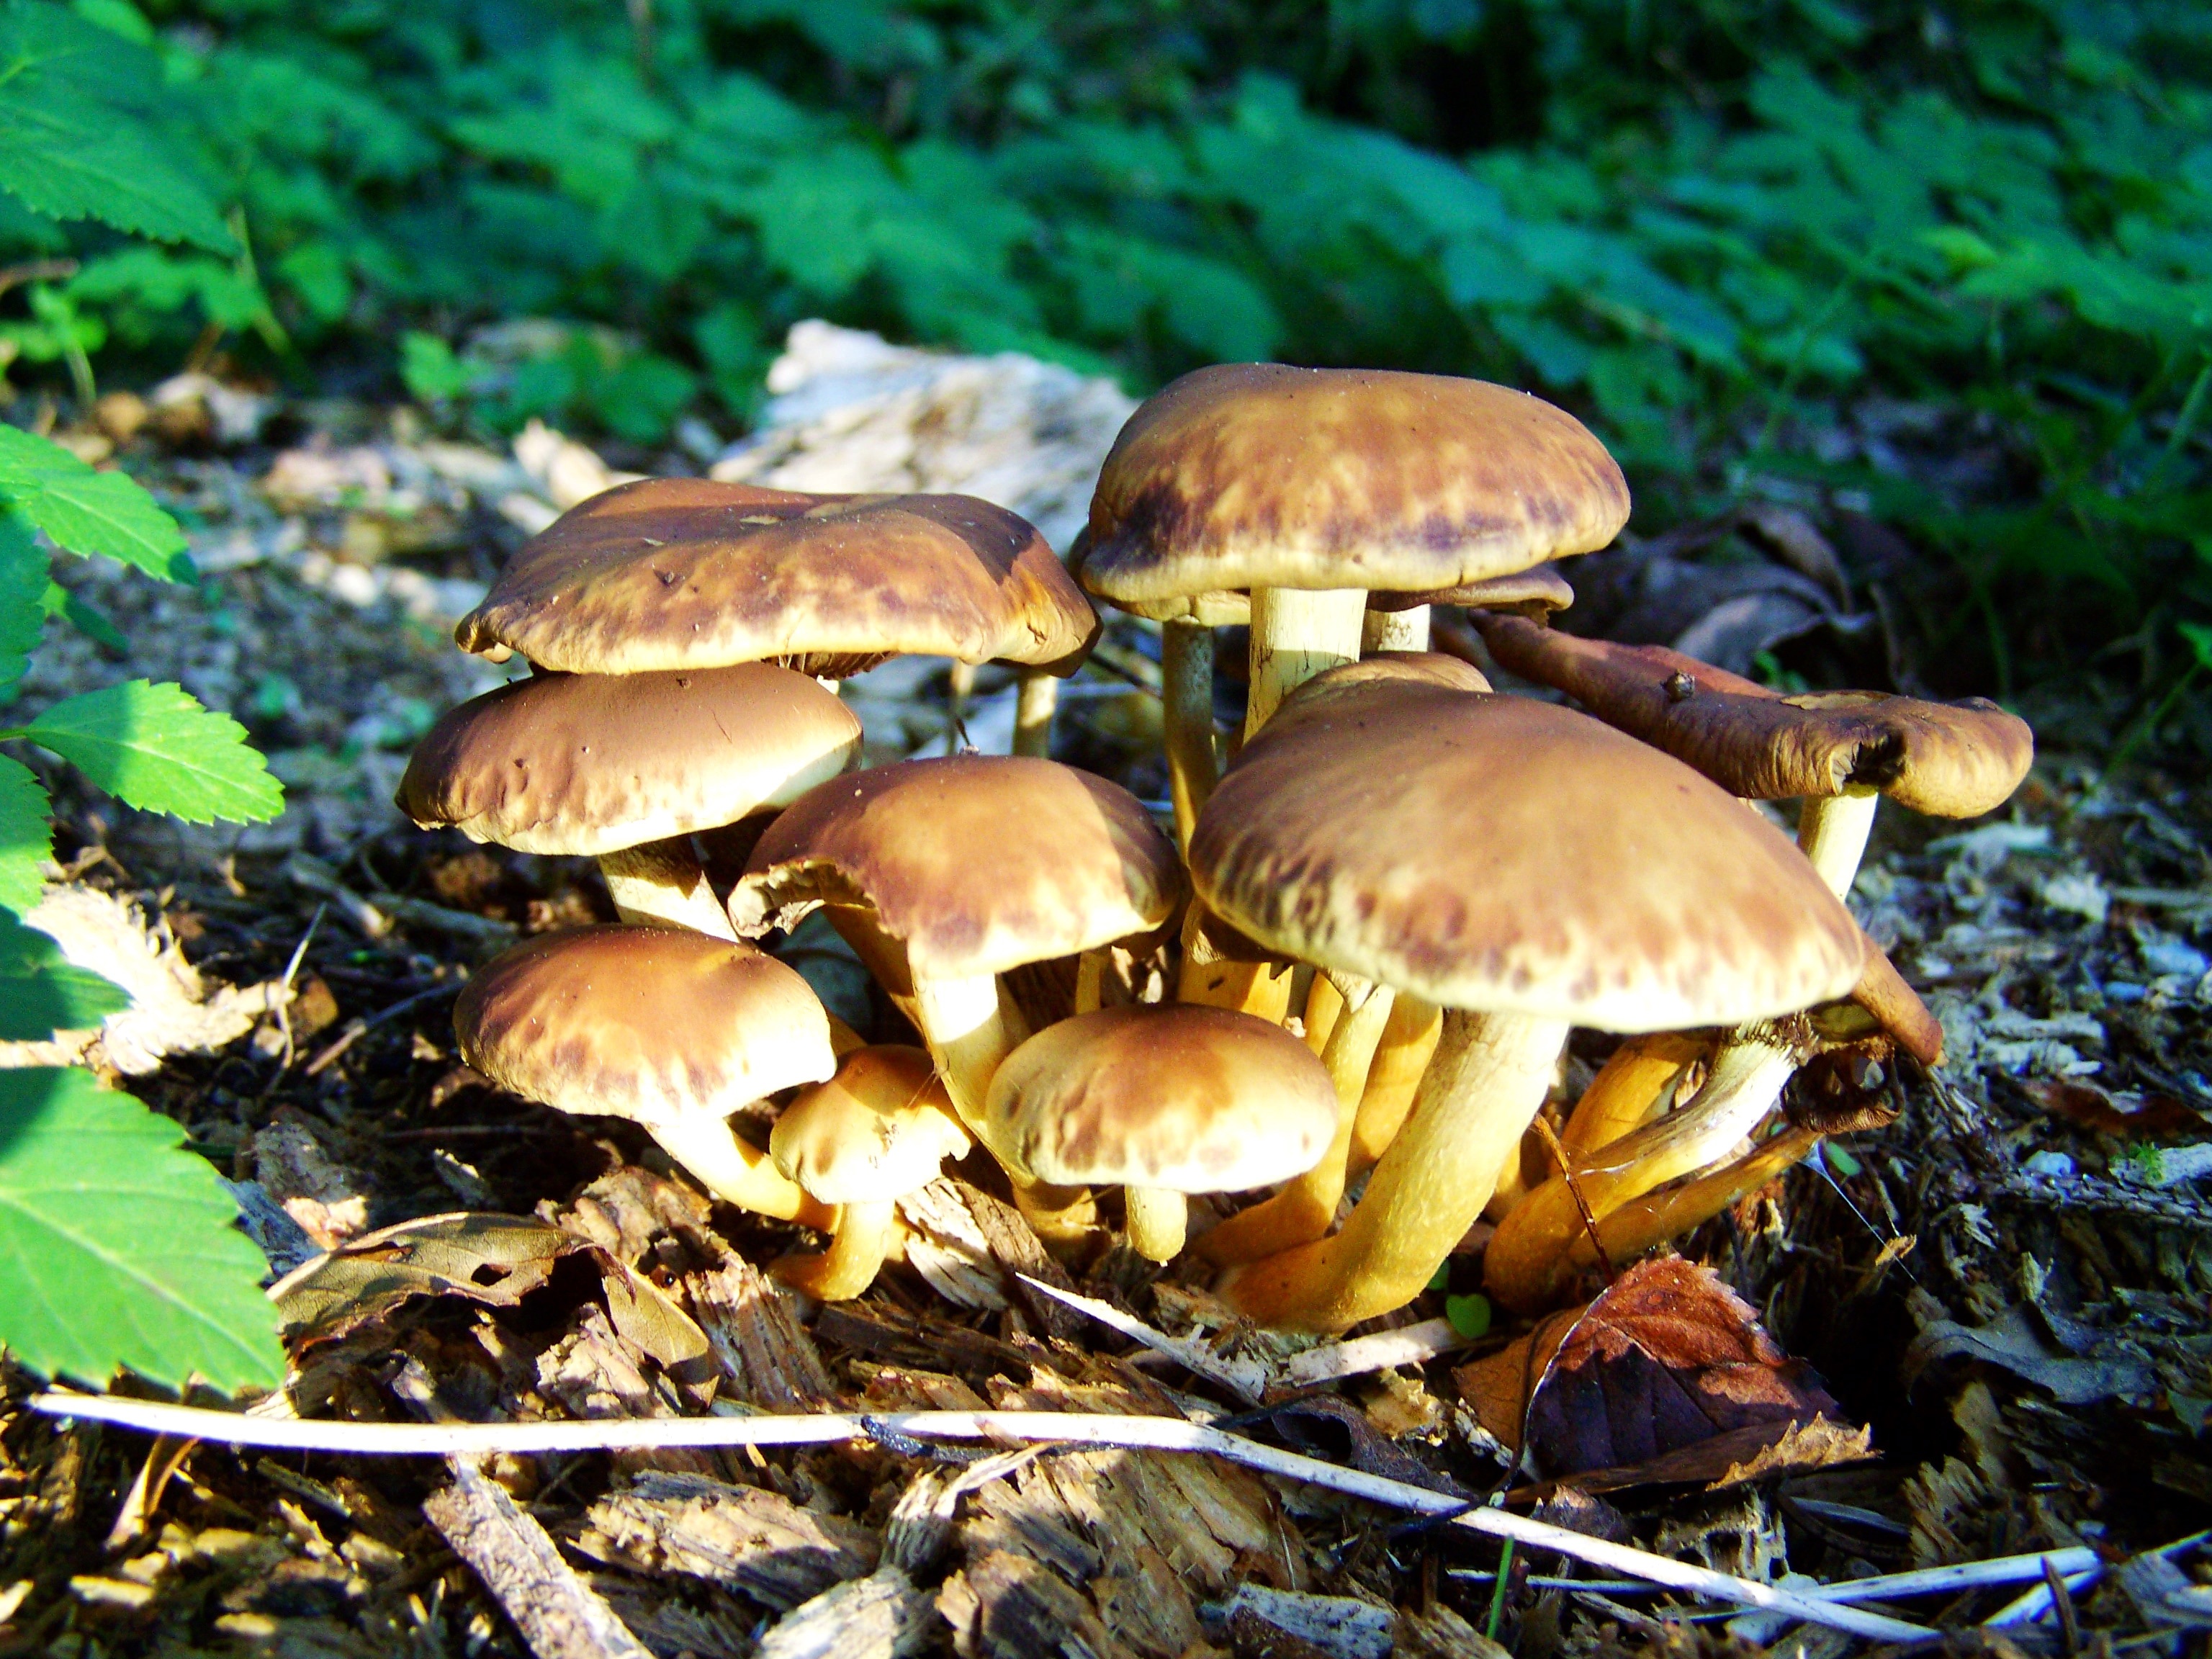 Все виды съедобных грибов с фото